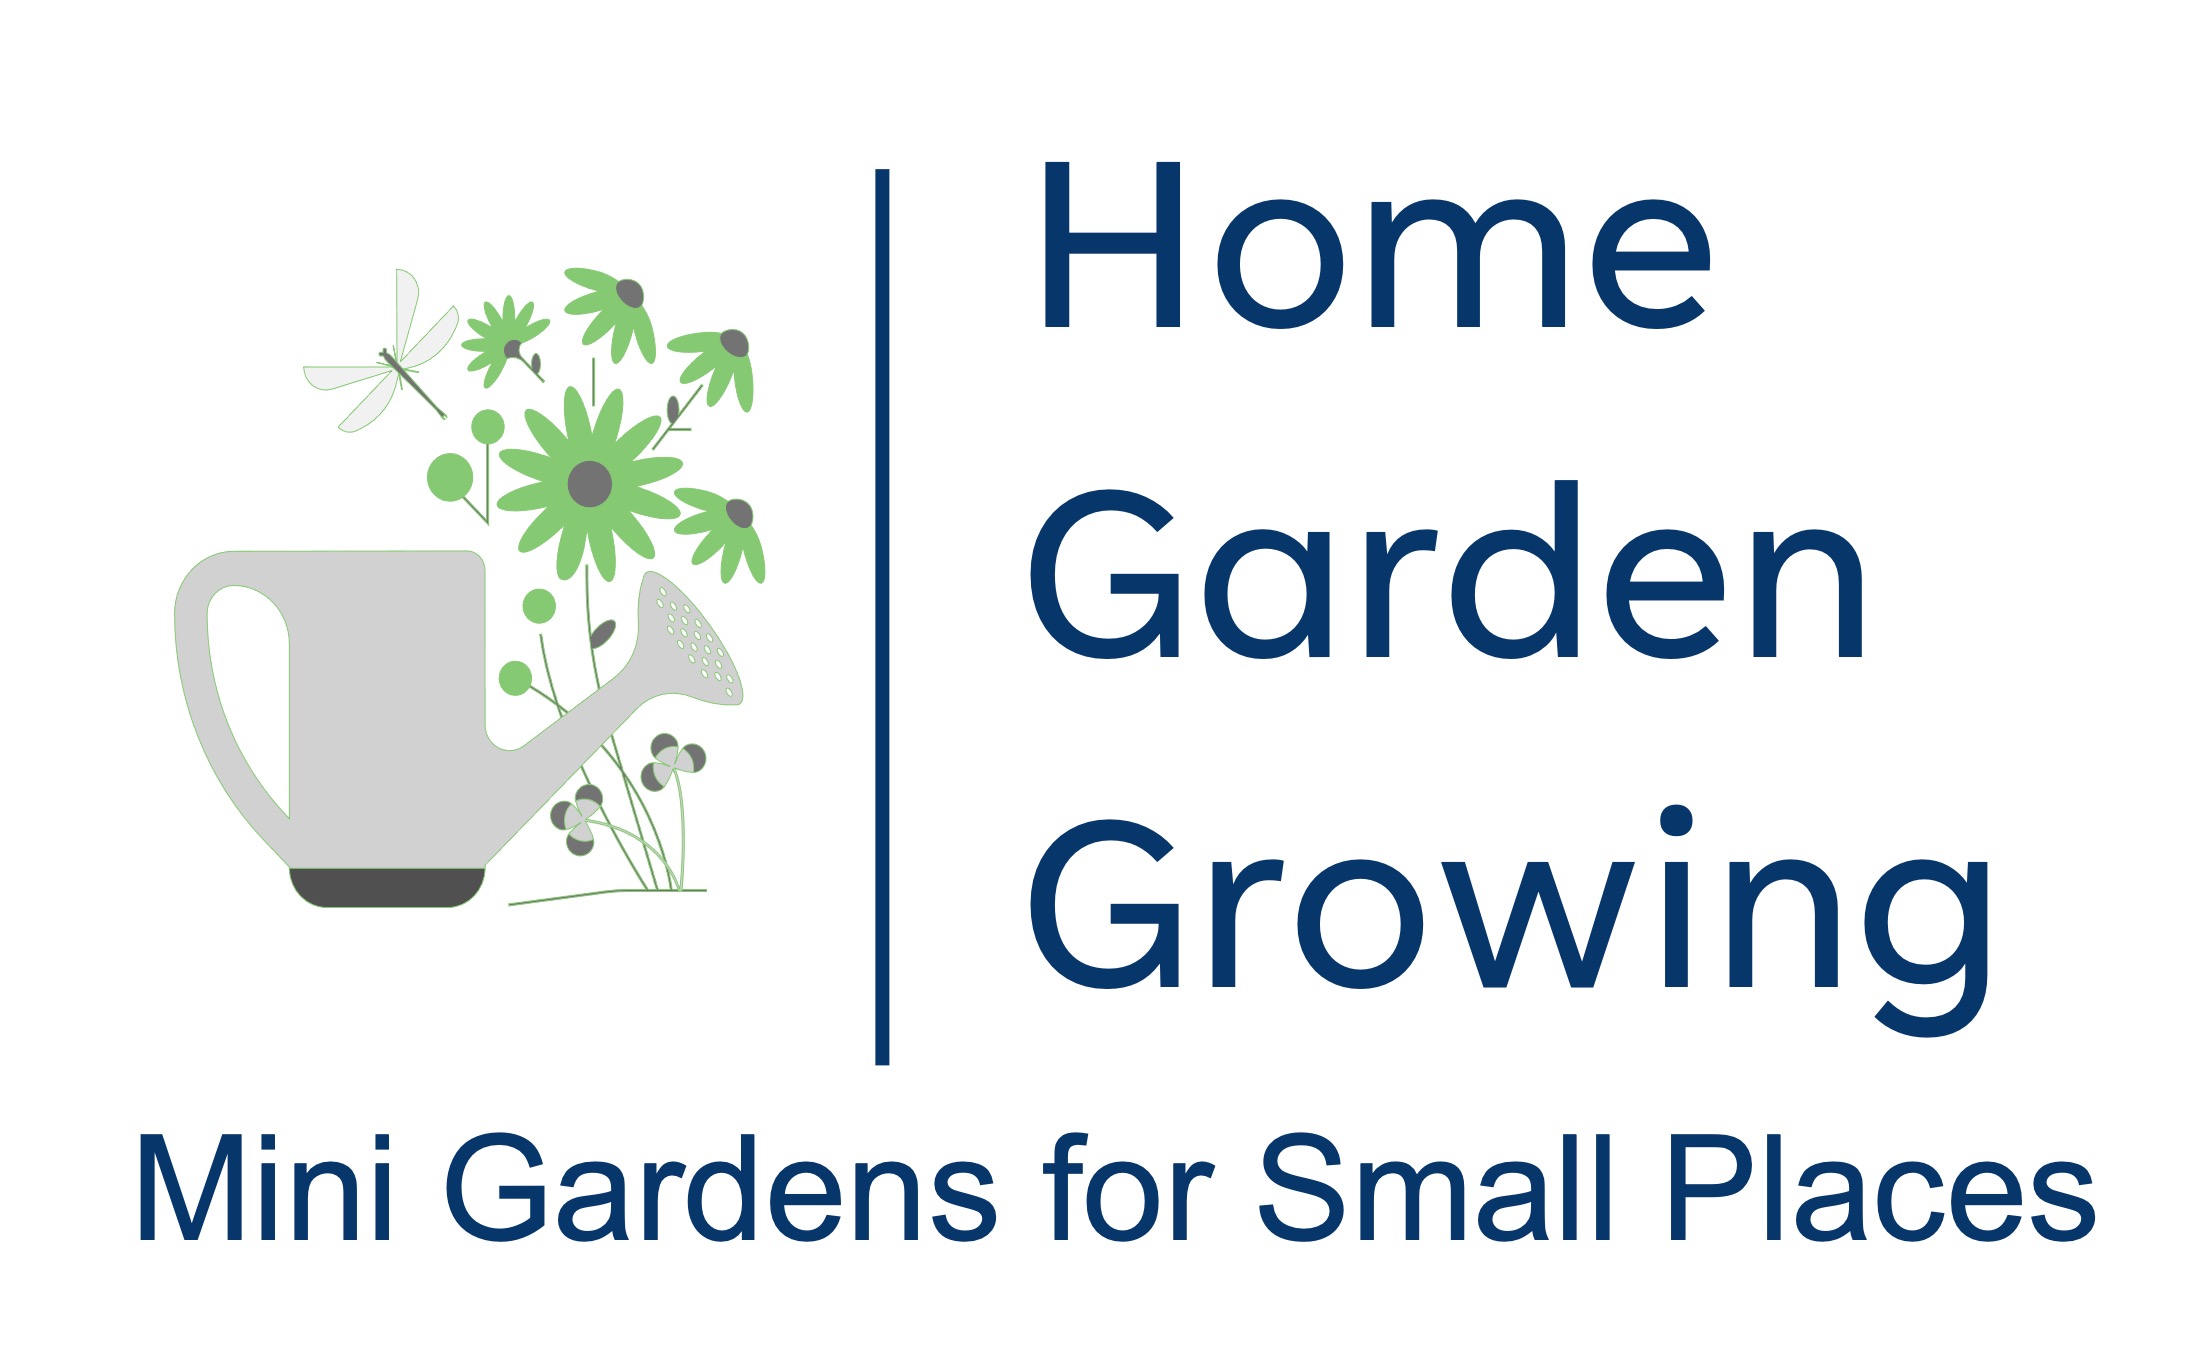 Home Garden Growing Logo